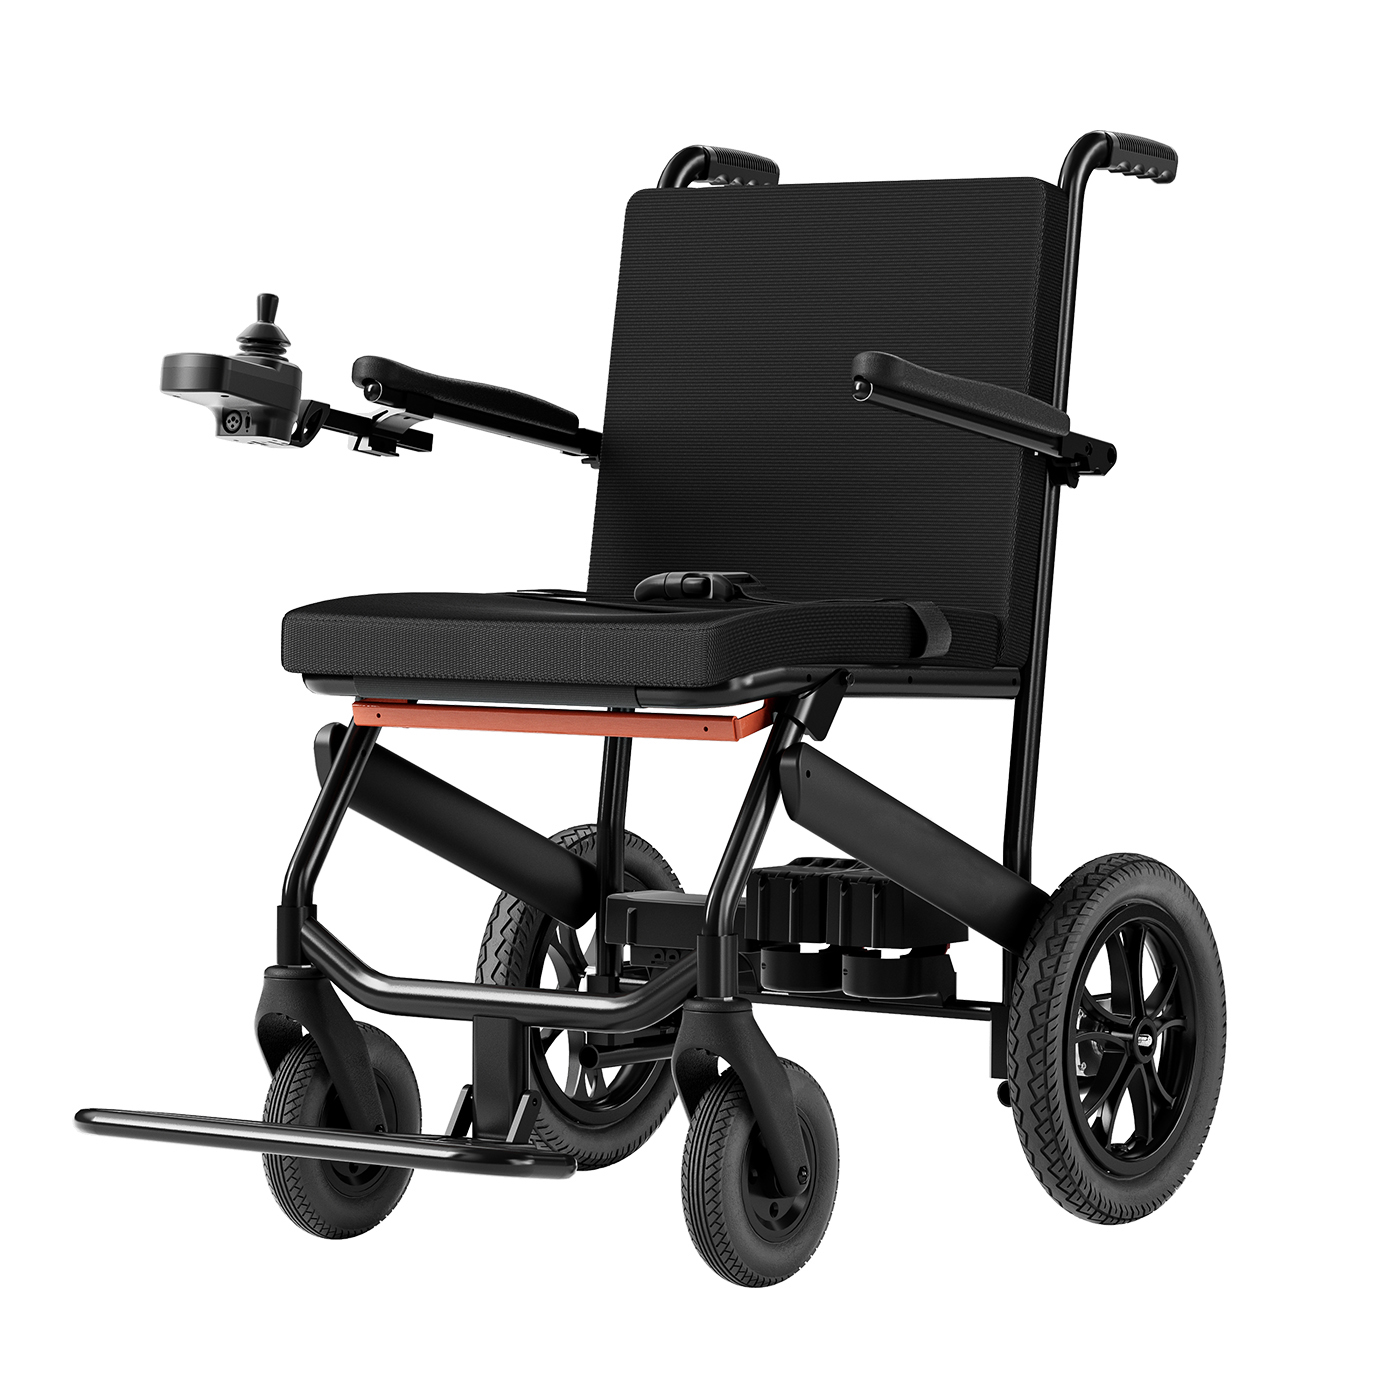 Продам надлегкі електричні інвалідні візки з вуглецевого волокна вагою 11,5 кг